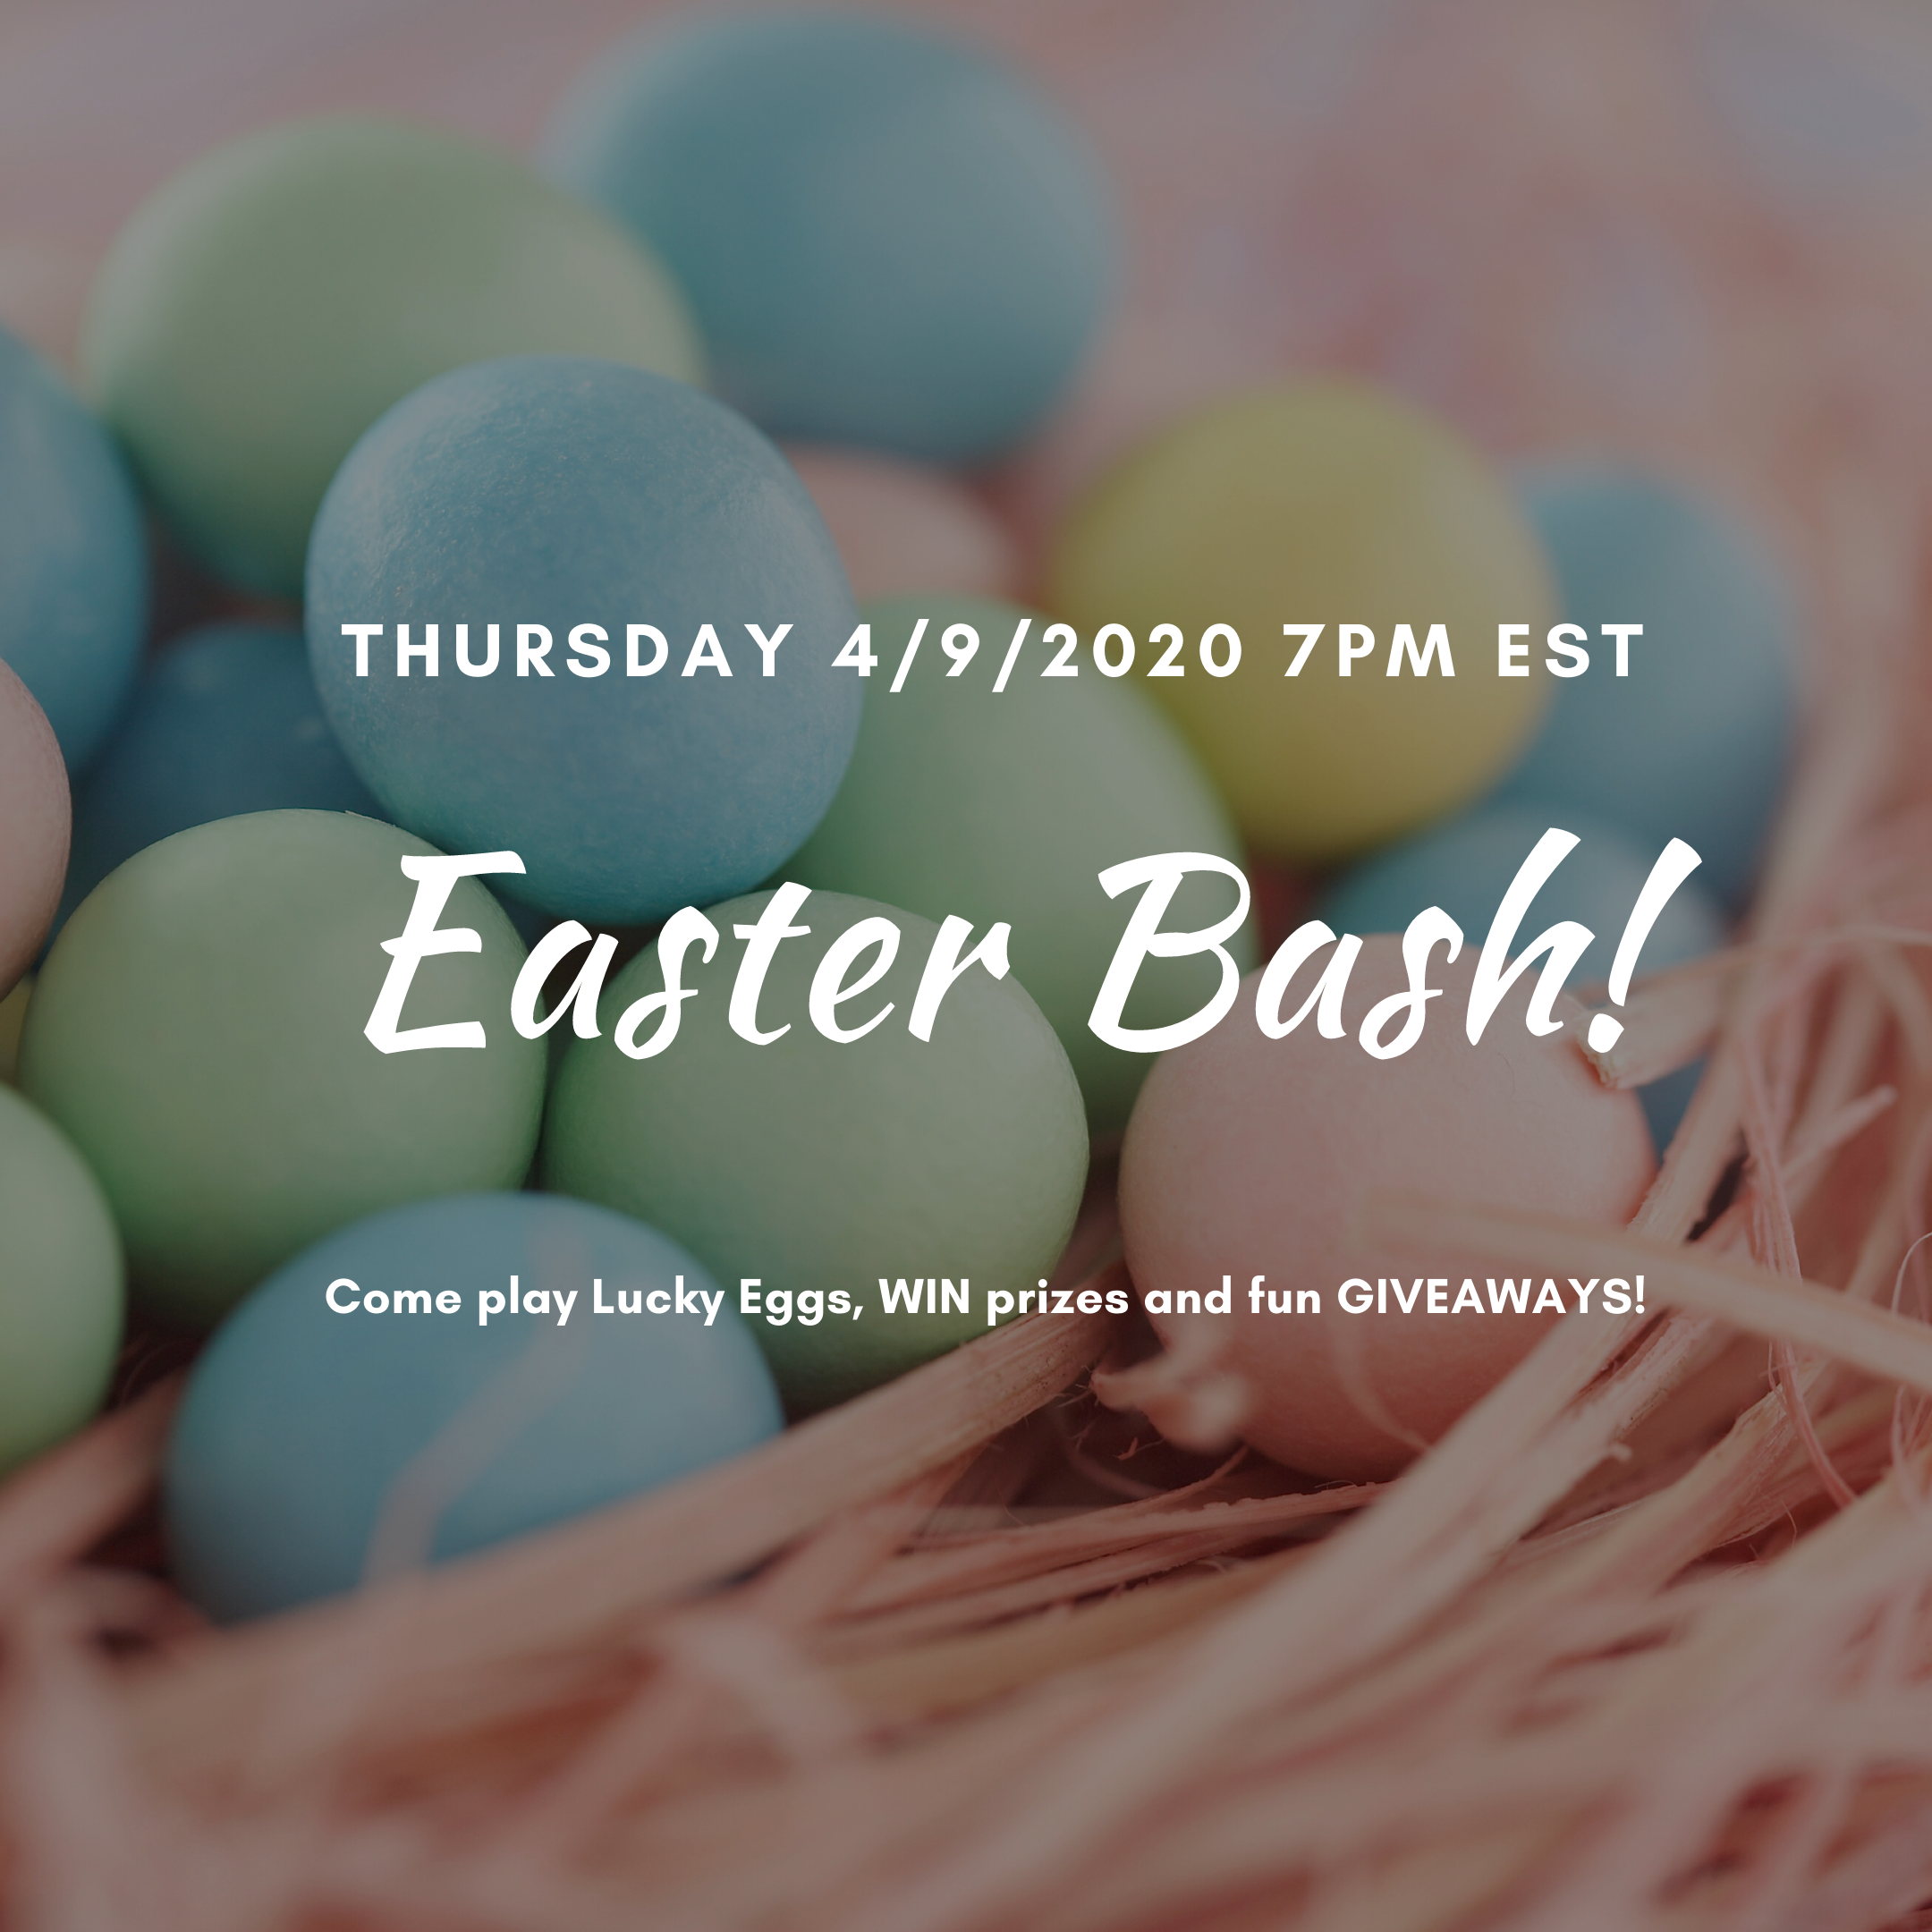 Easter Bash-Lucky Eggs